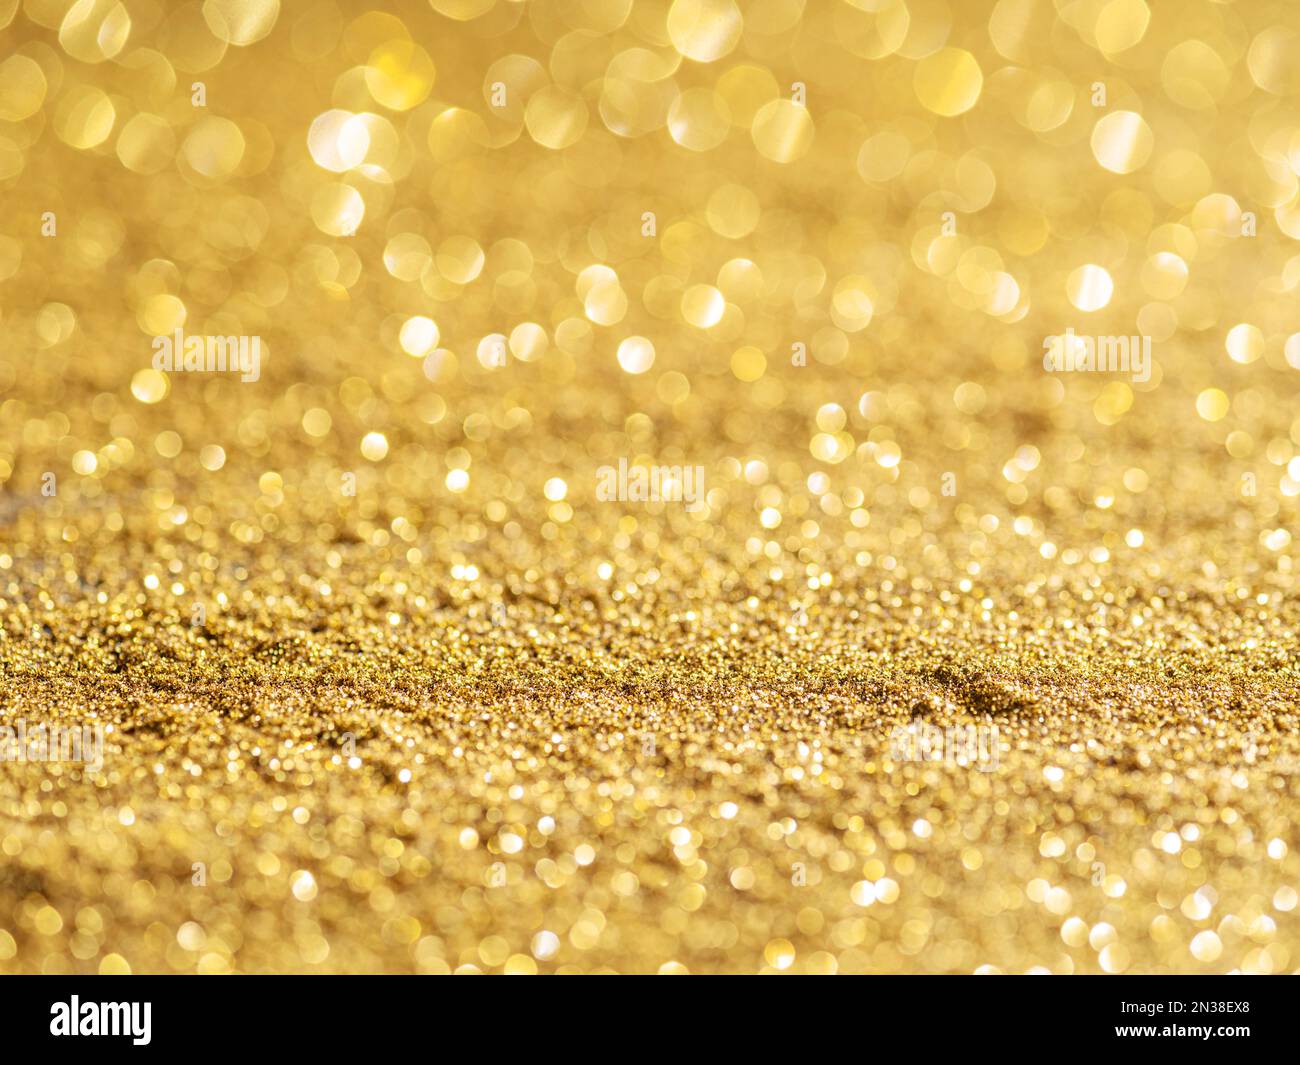 Poudre dorée étincelante. Fond festif Photo Stock - Alamy